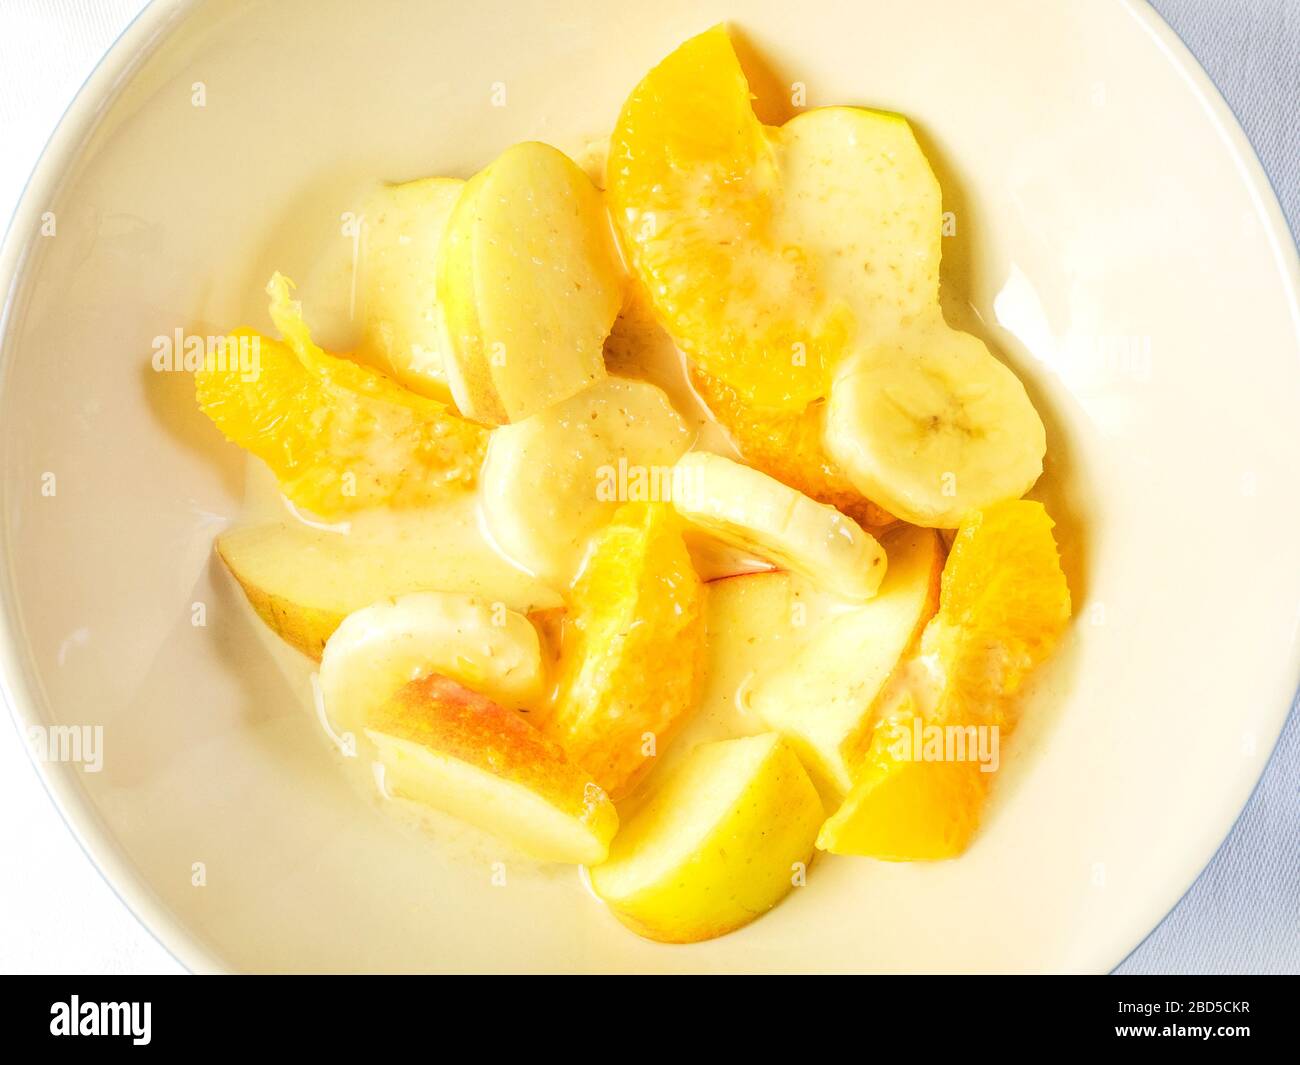 Una ciotola di Macedonia di frutta con spicchi d'arancia e mele a fette e banane con crema d'avena dall'alto su una tovaglia bianca Foto Stock